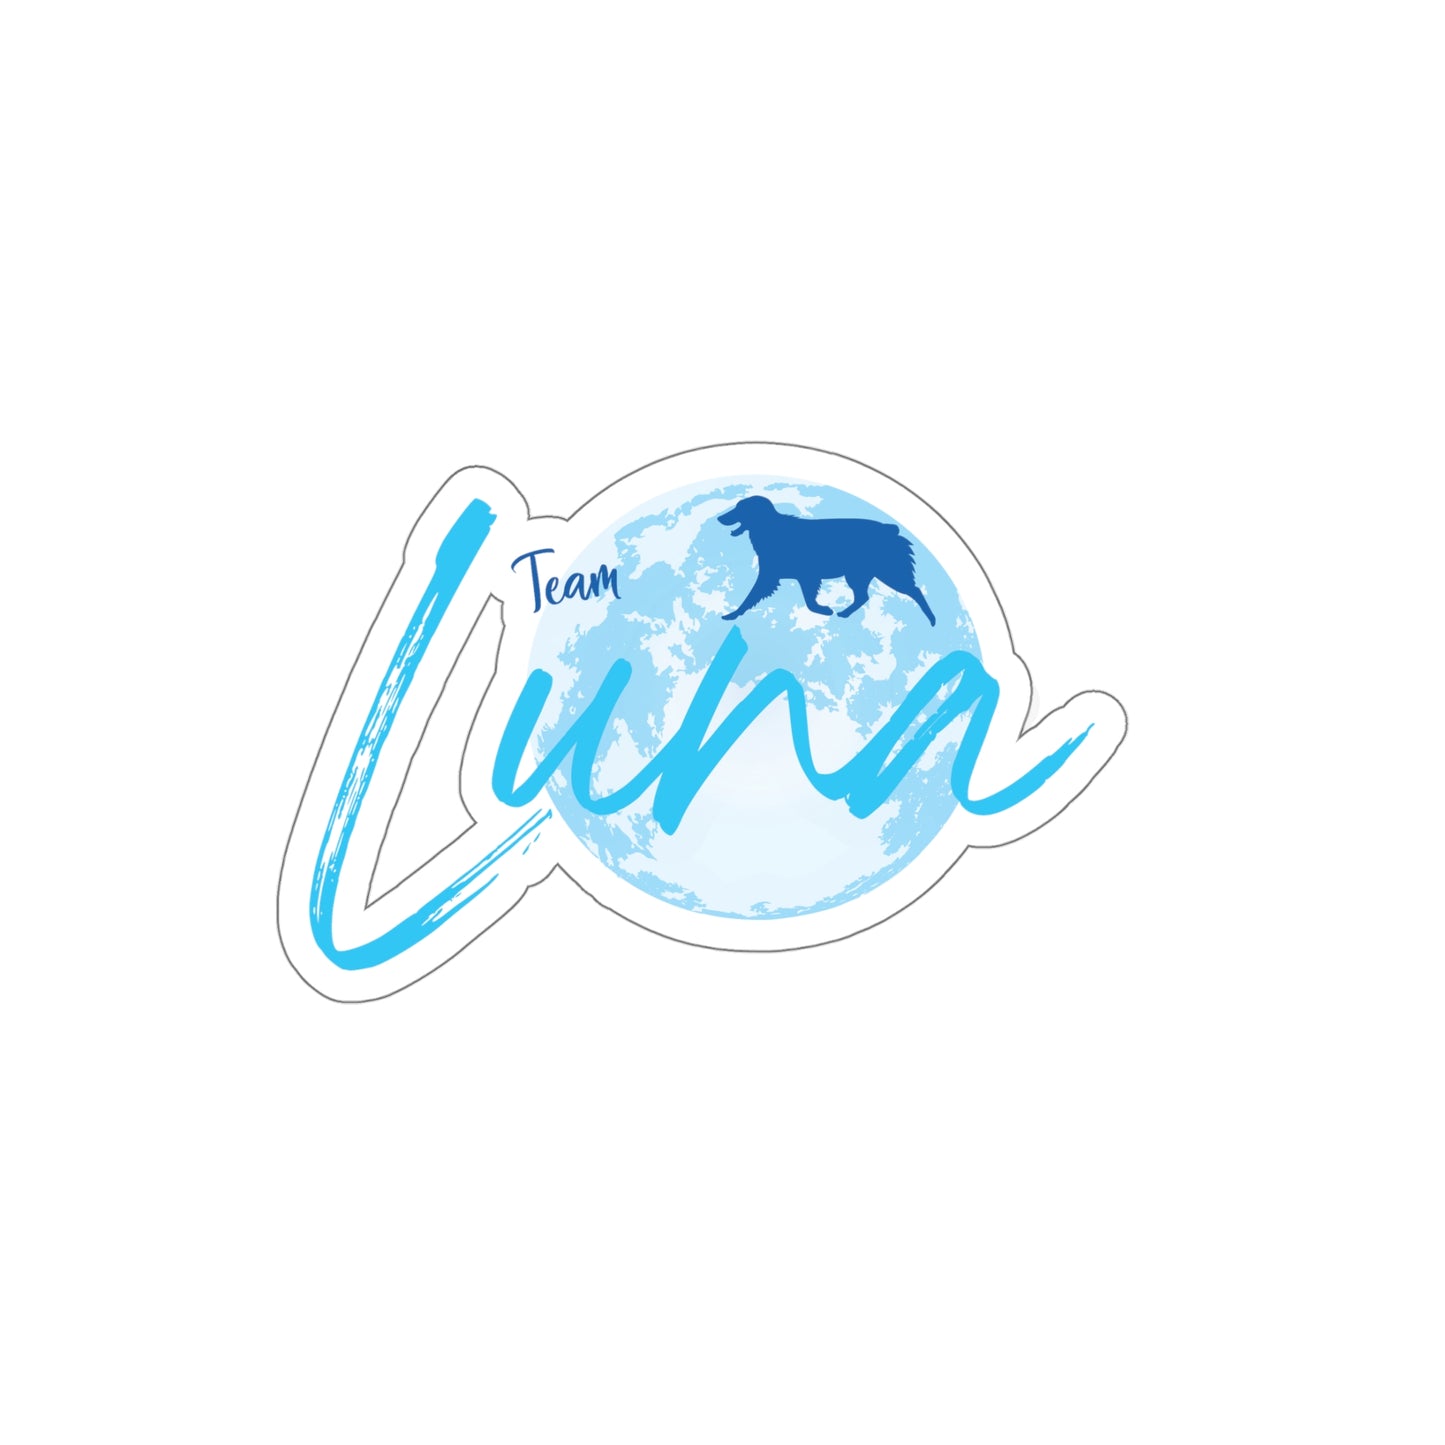 LUNA Kiss-Cut Stickers